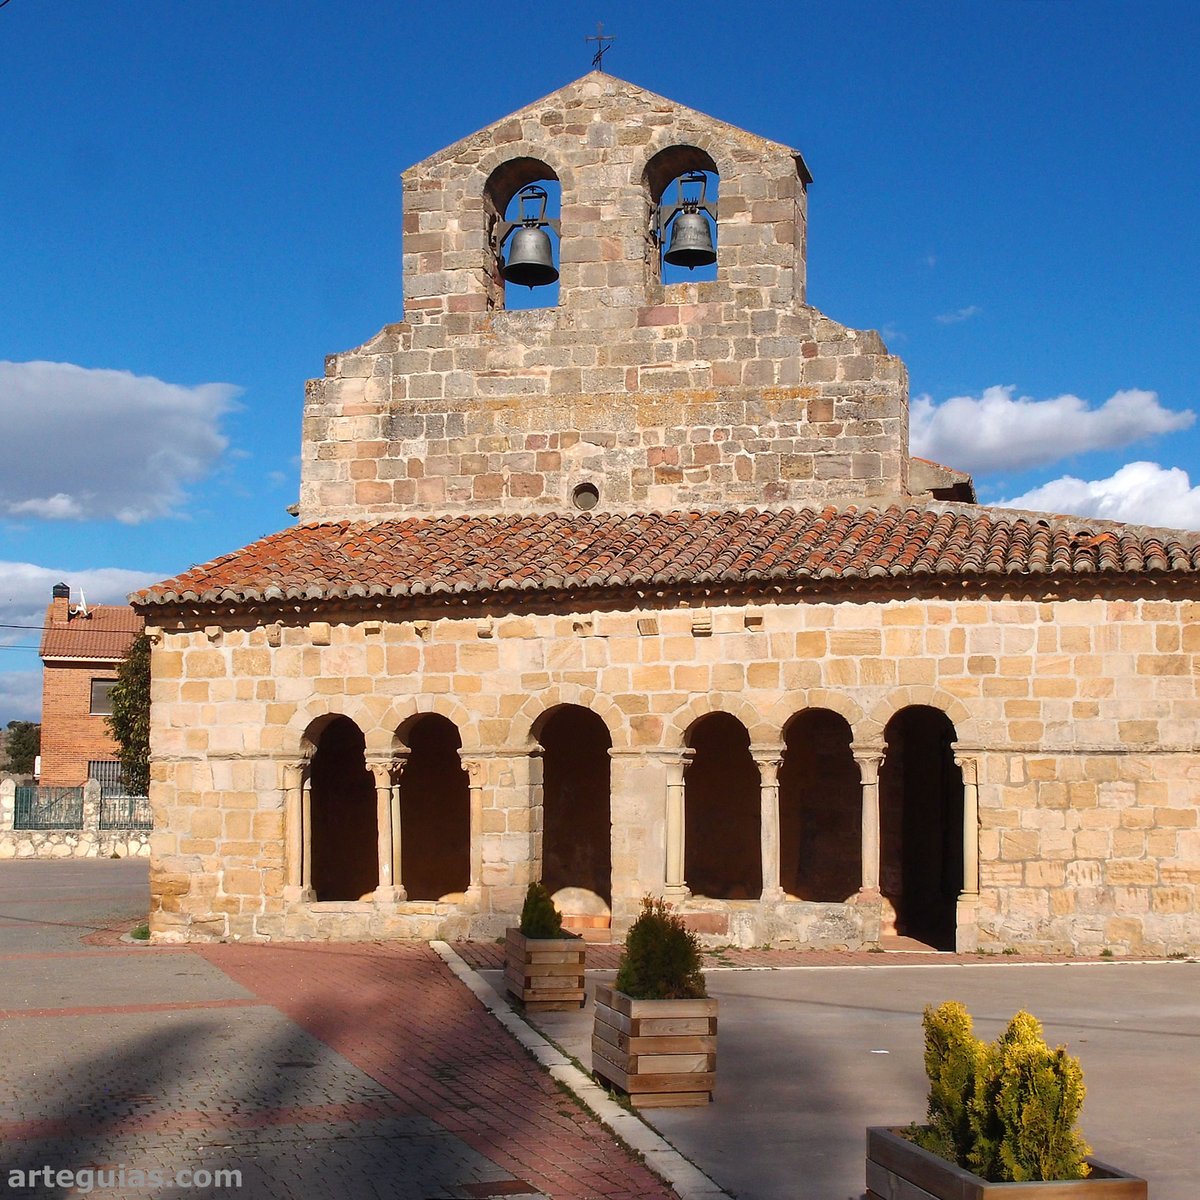 La de Saúca es una iglesia del #románico rural de #Guadalajara. Su belleza se aprecia cuando el sol del atardecer incide en uno de los tramos de la galería porticada y en su espadaña. arteguias.com/iglesia/sauca.… #arte #Siguenza #románico #turismorural #viajes